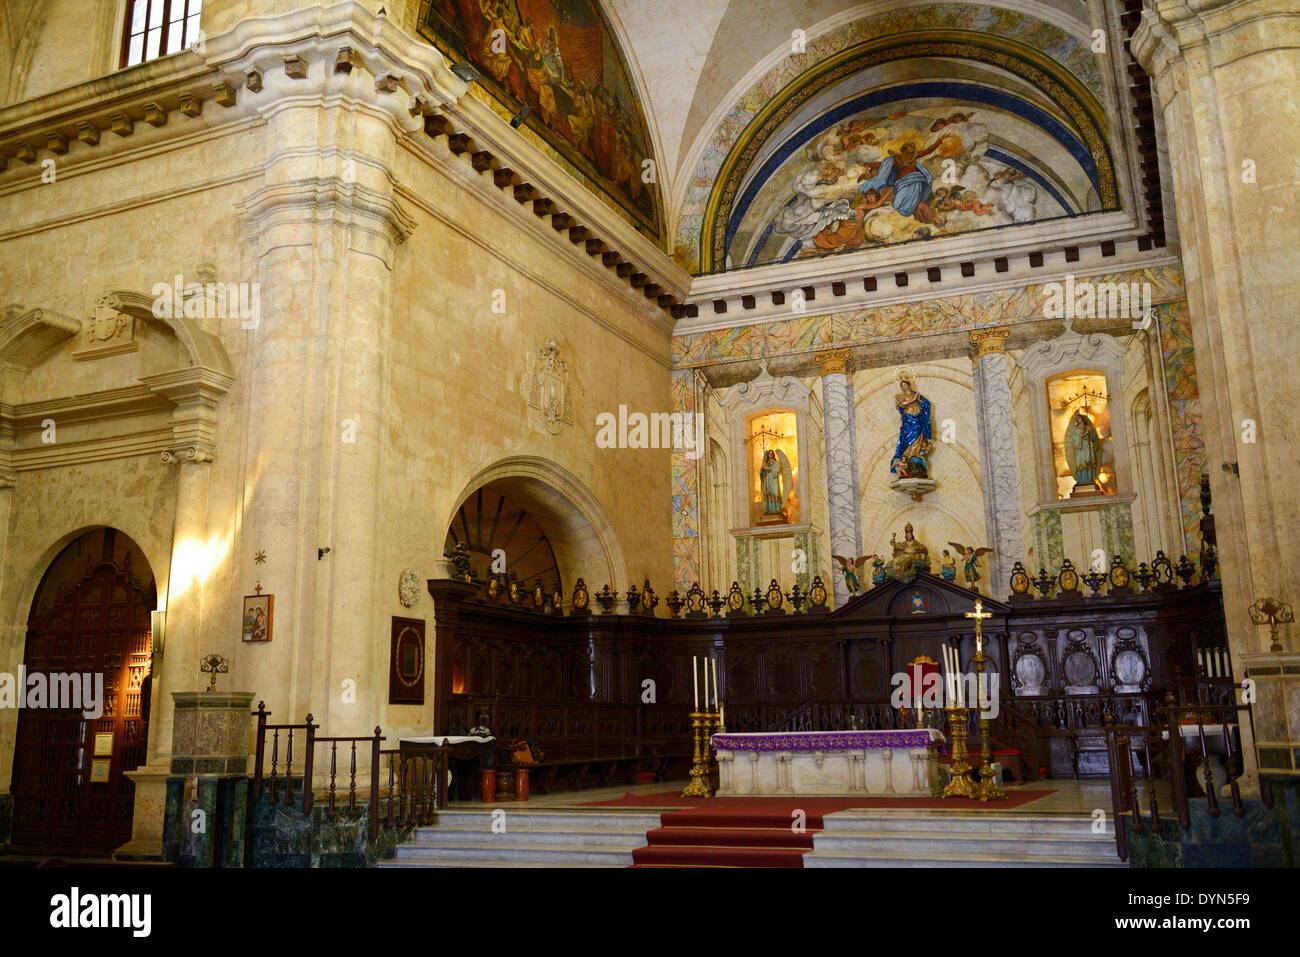 Altare santuario a La Havana Cattedrale cattolica romana con la Vergine Maria Immacolata Concezione cuba Foto Stock